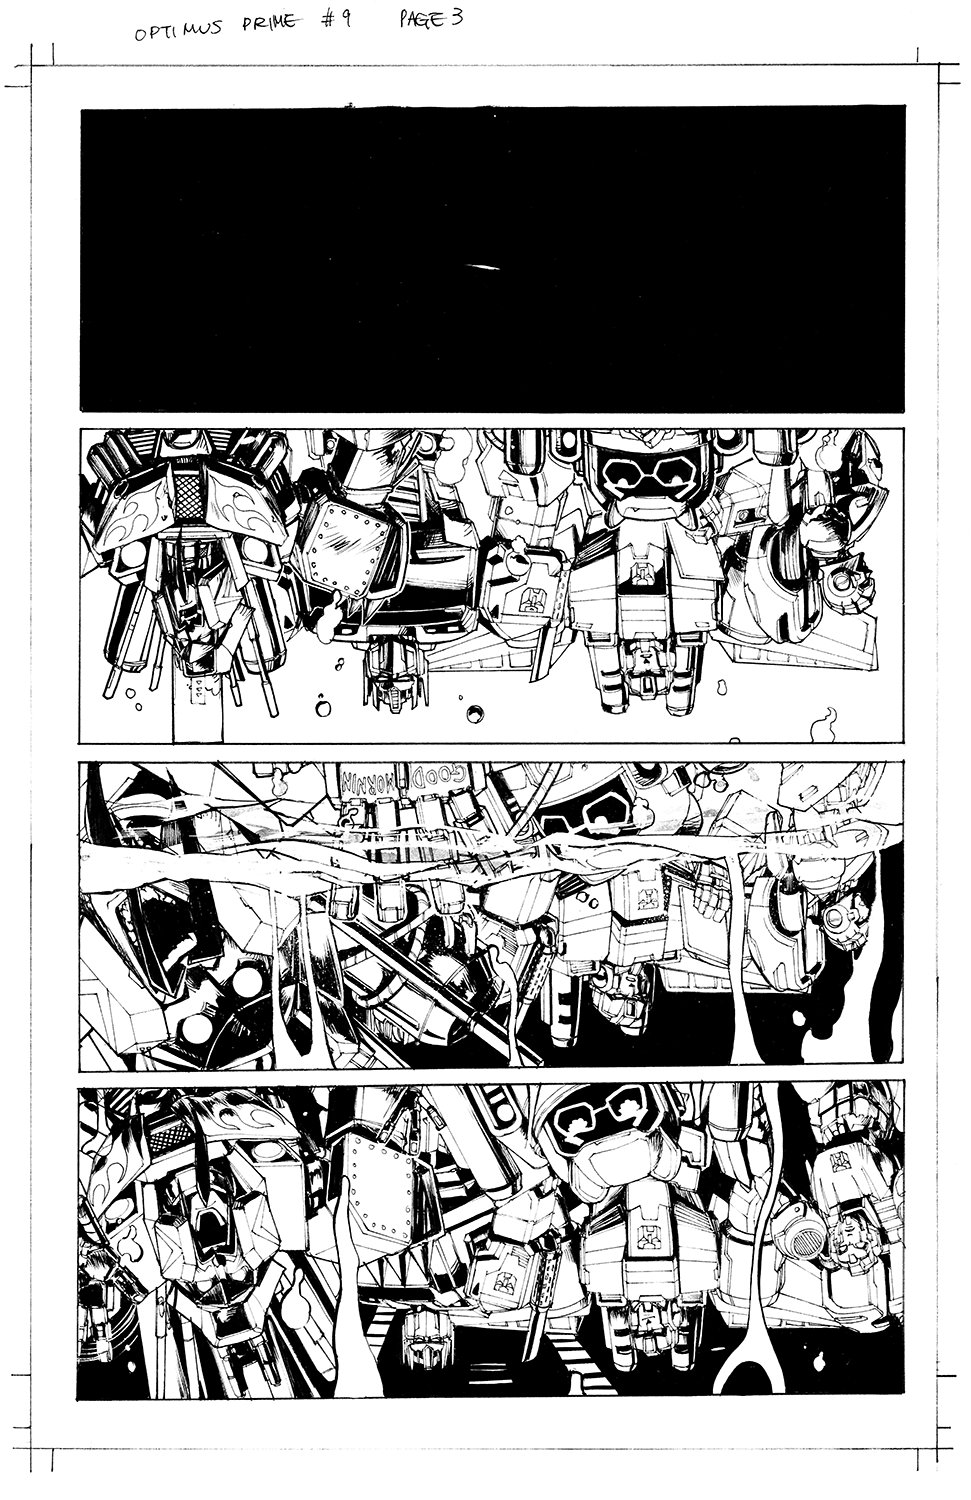 Optimus Prime #9 Page 03